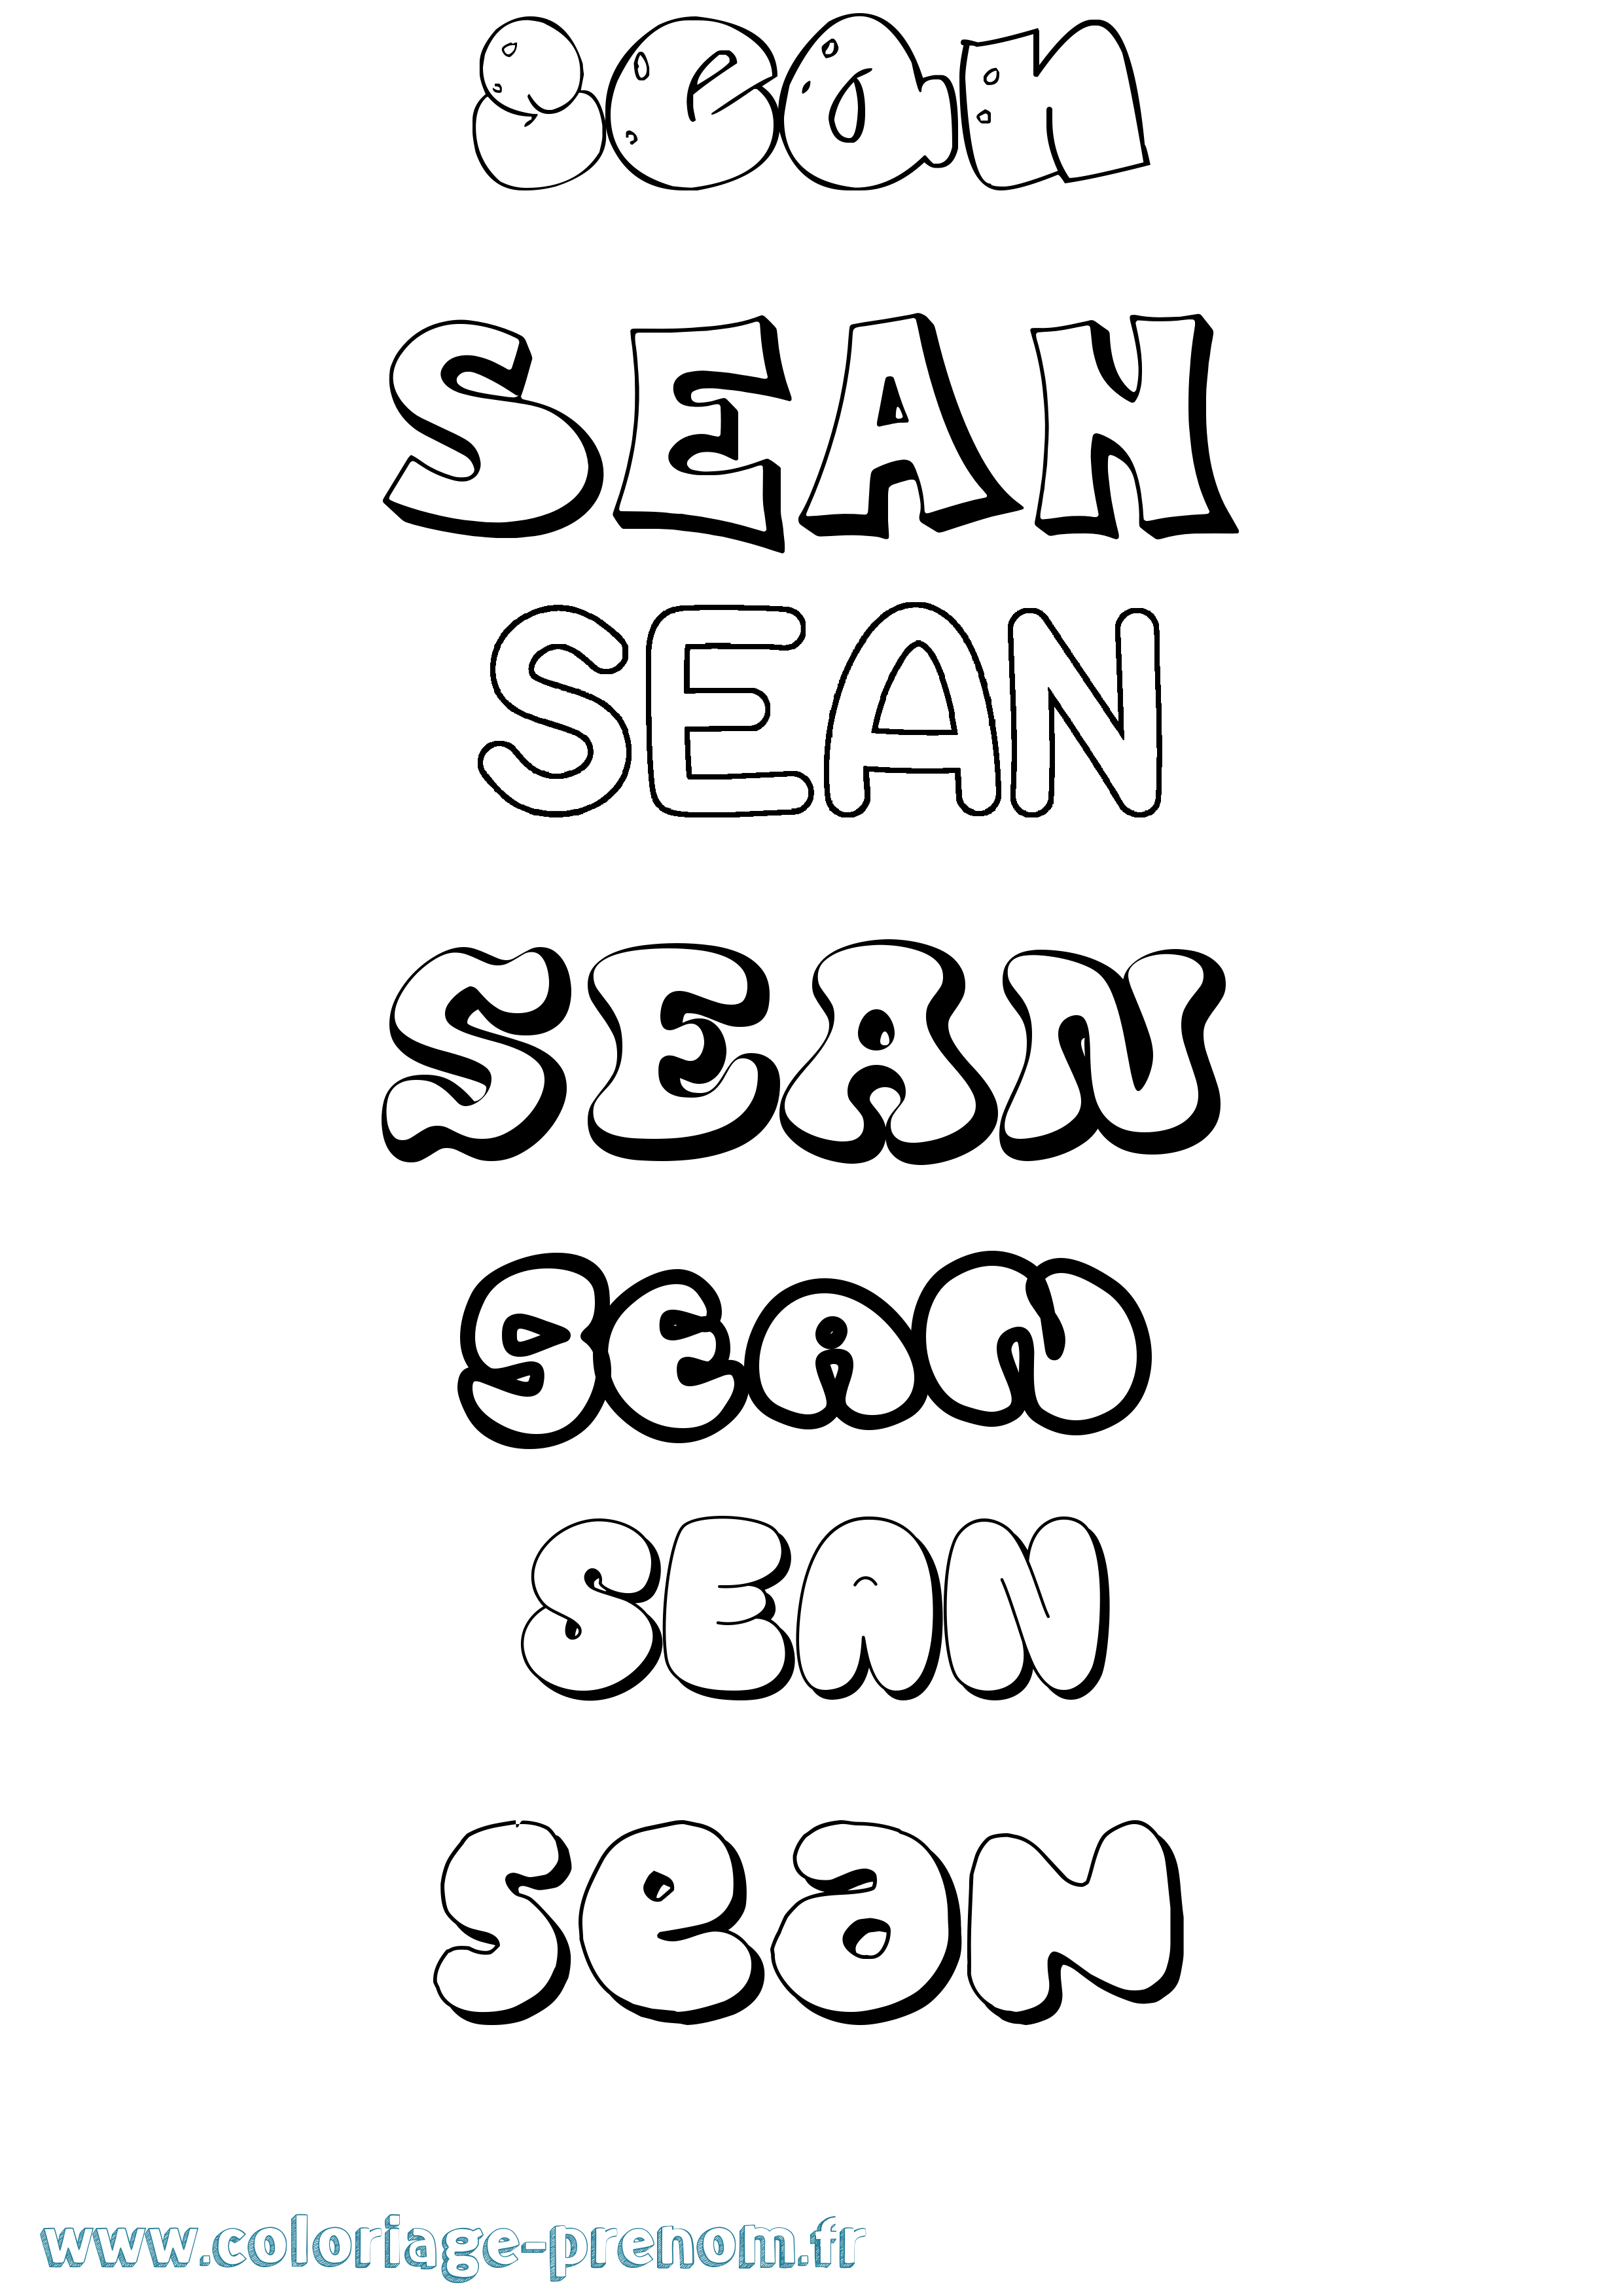 Coloriage prénom Sean